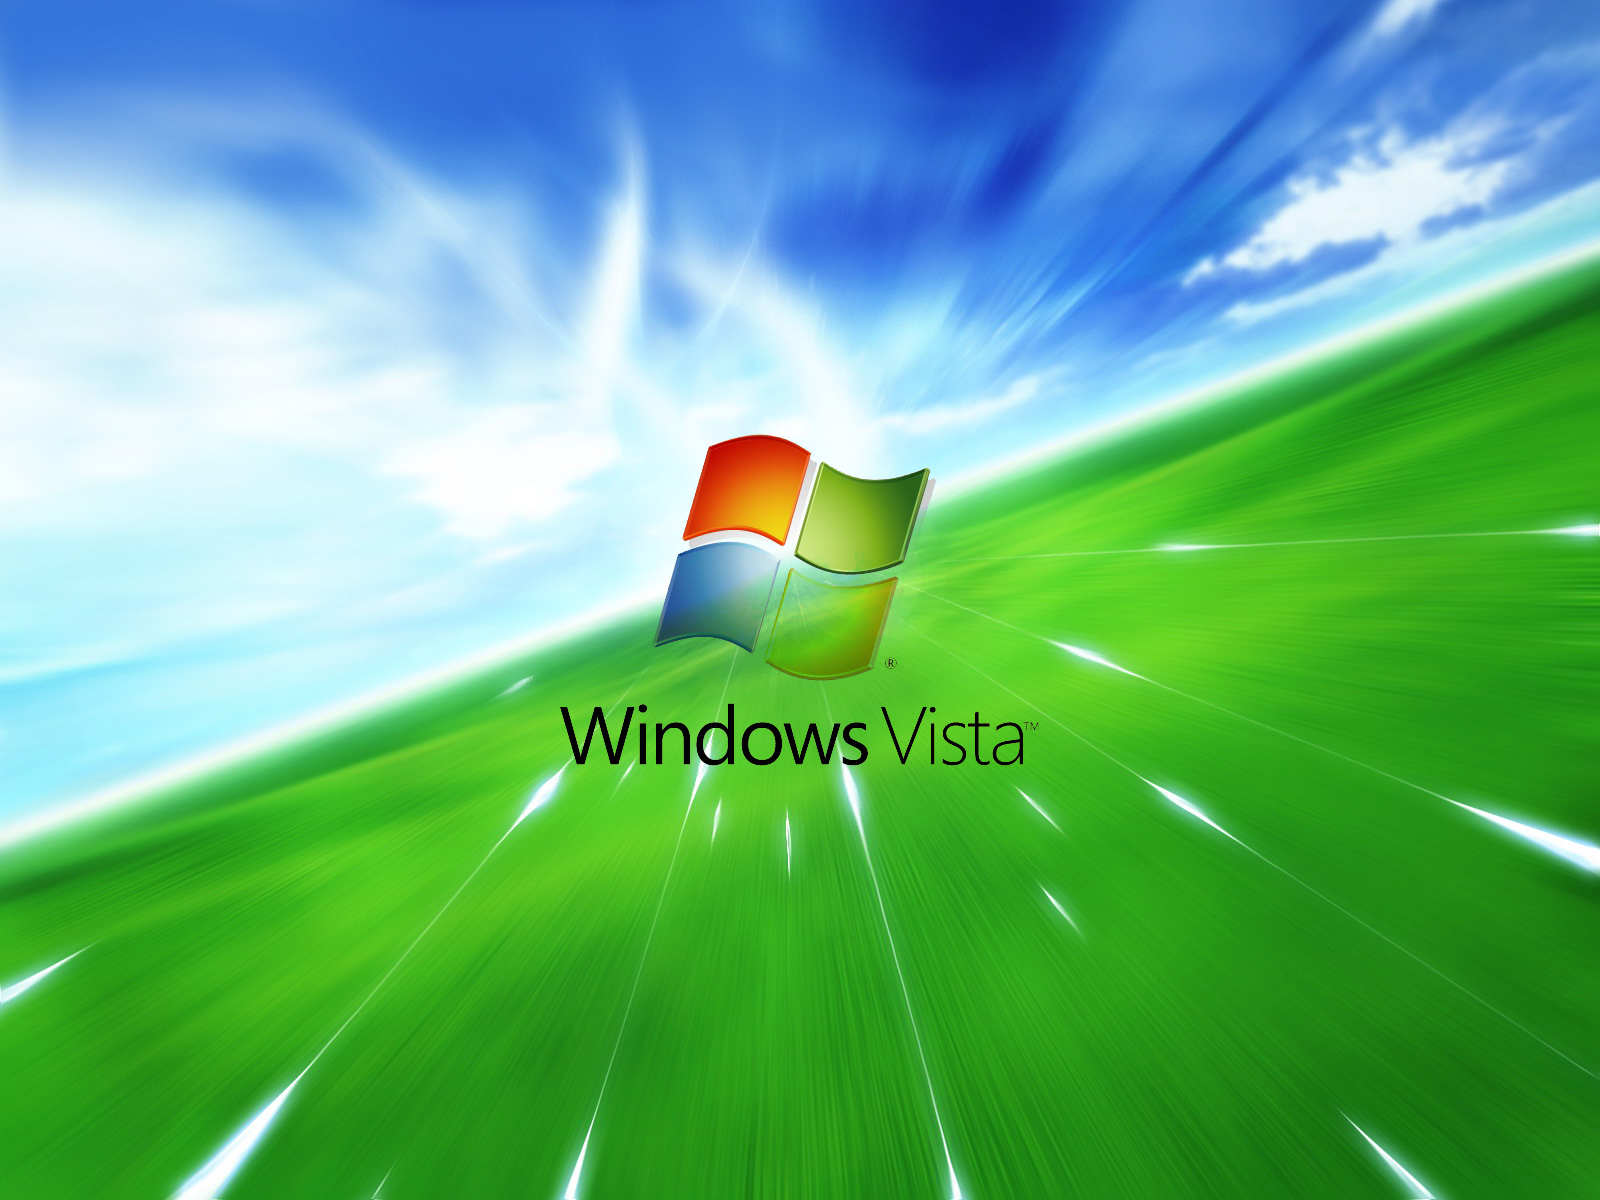 Bạn muốn có nền máy tính Windows XP đẹp và chất lượng cao? Đừng bỏ lỡ cơ hội tải nền máy tính Windows XP chất lượng cao hơn bao giờ hết tại đây. Với nhiều hình ảnh độc đáo và đẹp mắt, bạn sẽ có được màn hình đẹp như mơ.